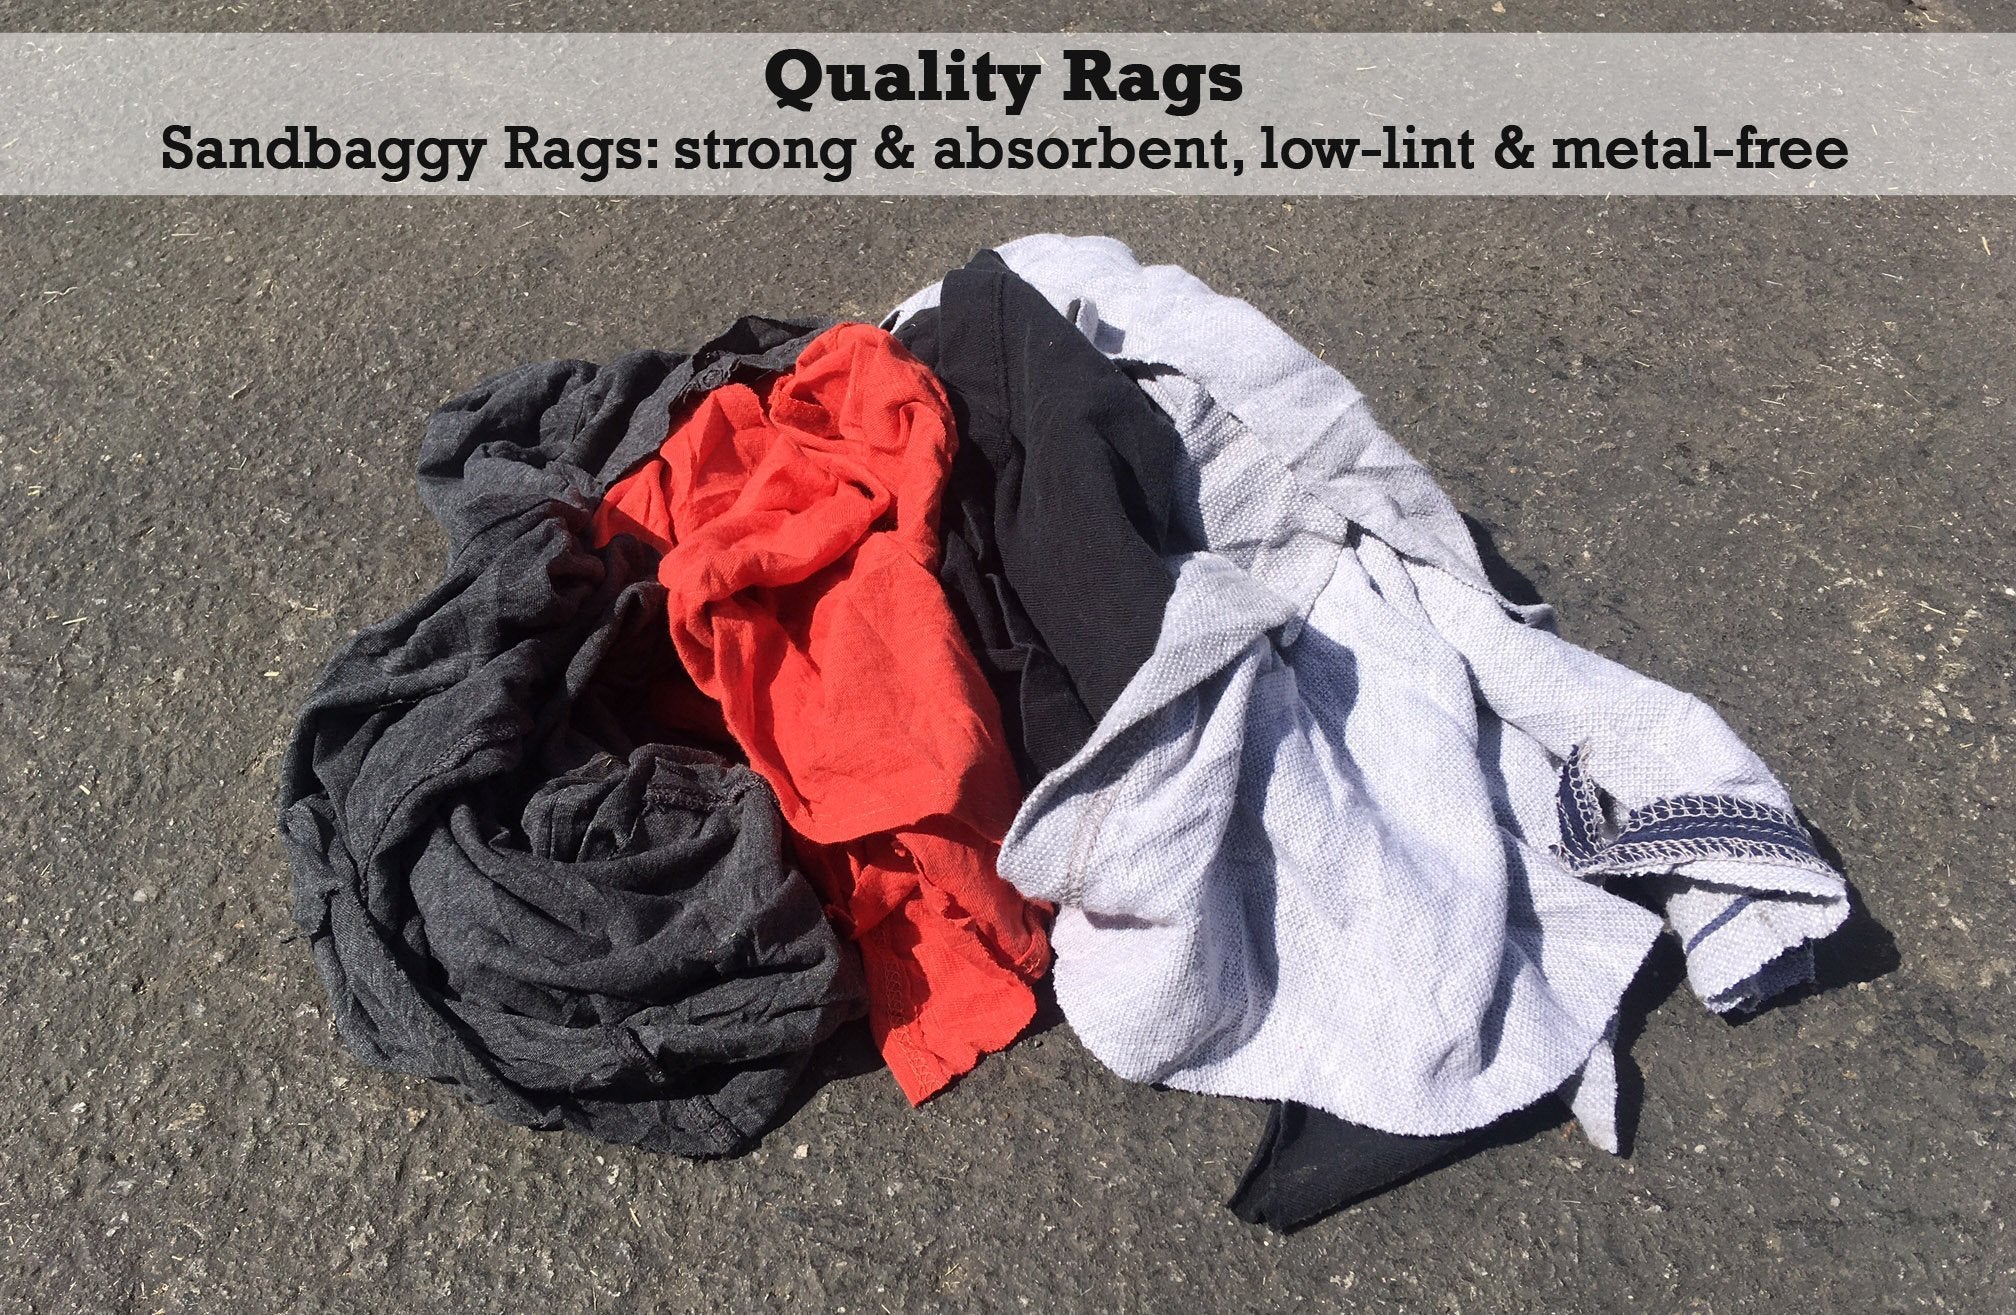 Bag O Rags Recycled Cotton 2 Lb. Bag